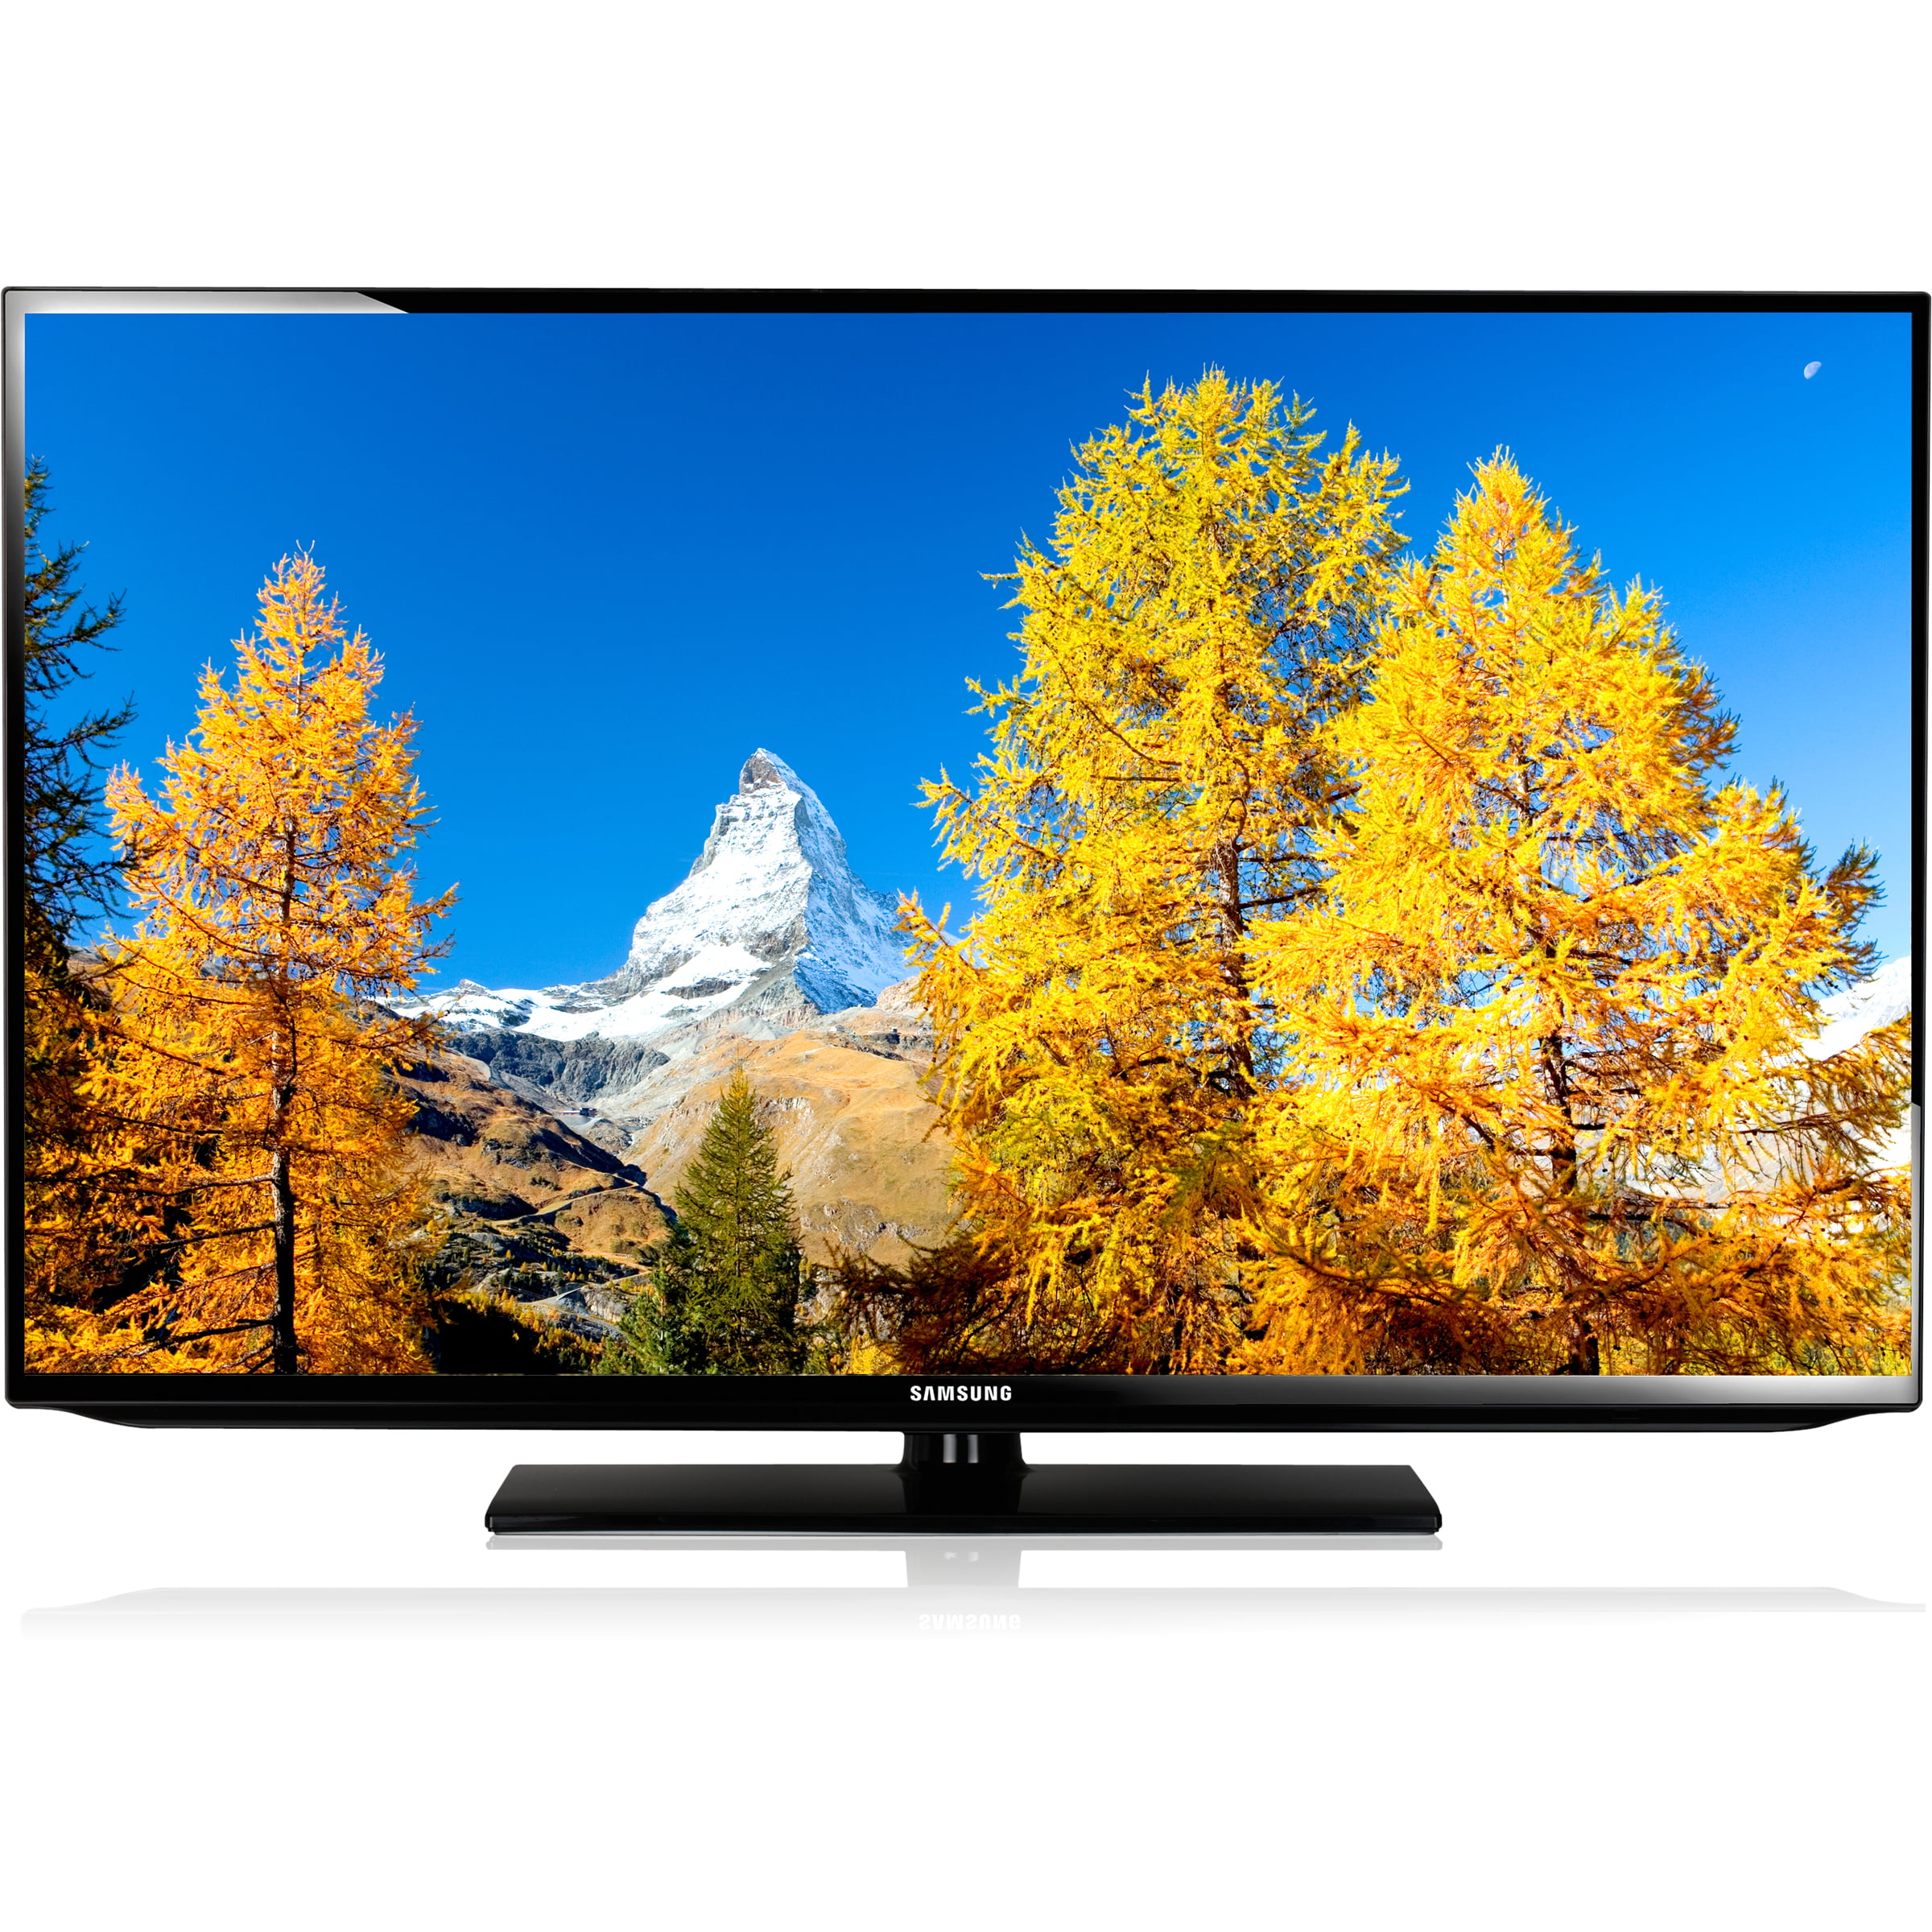 Samsung (1080p) LED-LCD TV (UN46EH5000) - Walmart.com